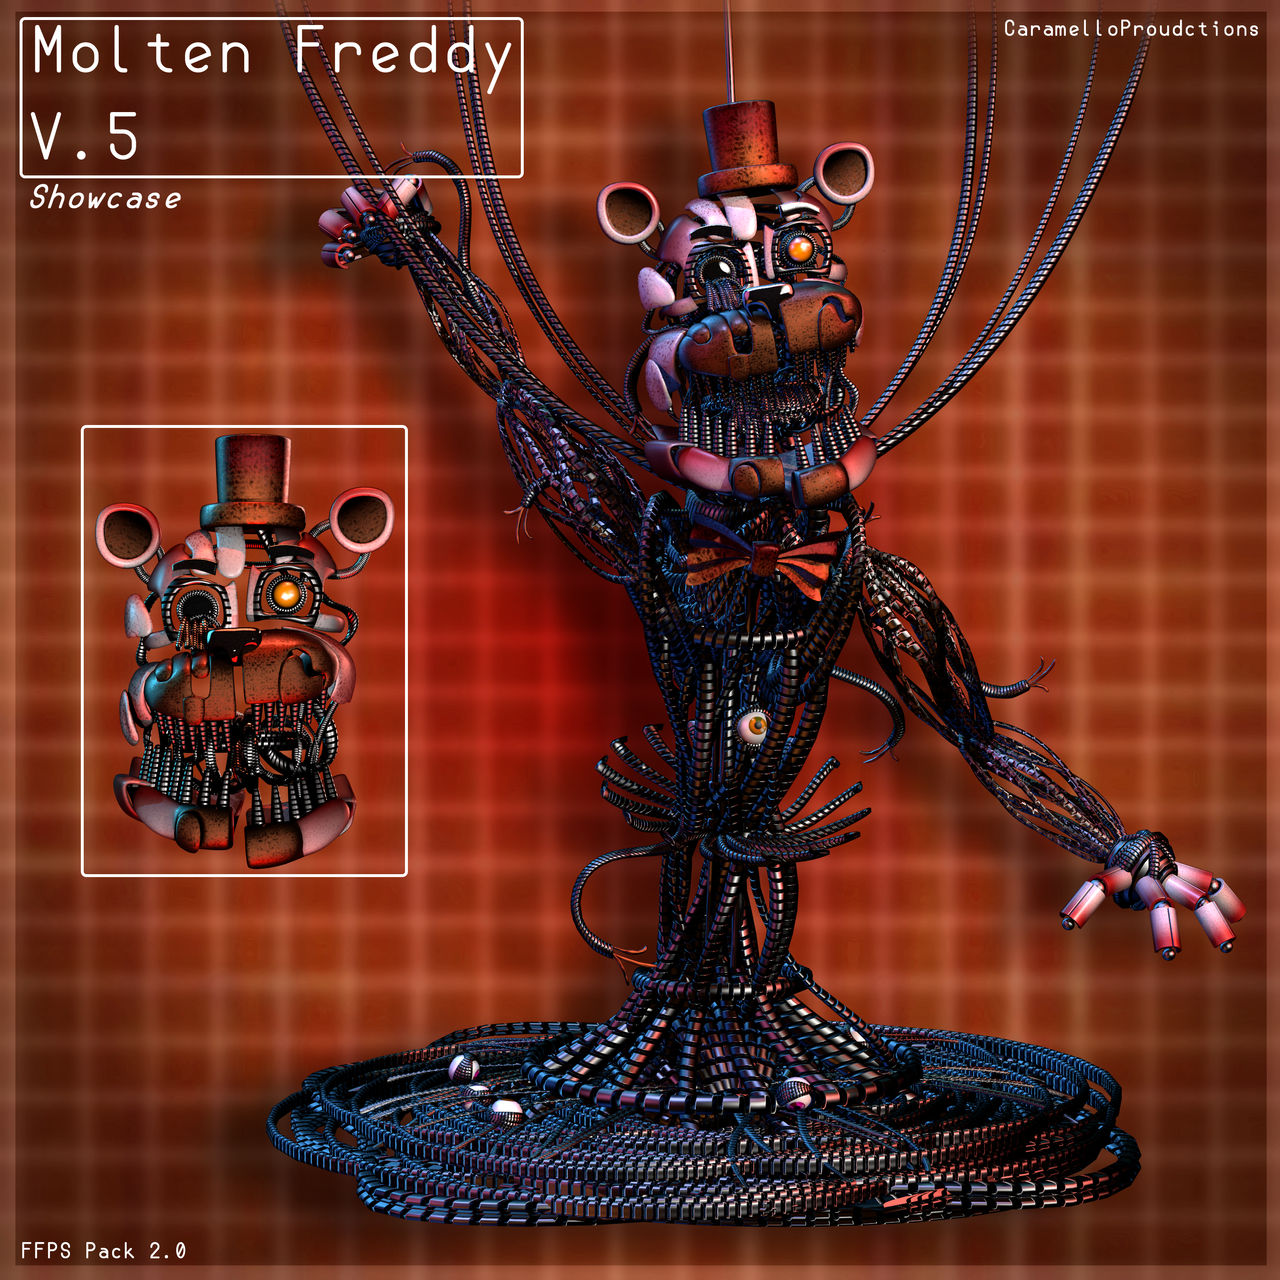 New Molten Freddy Render by darealccc on DeviantArt